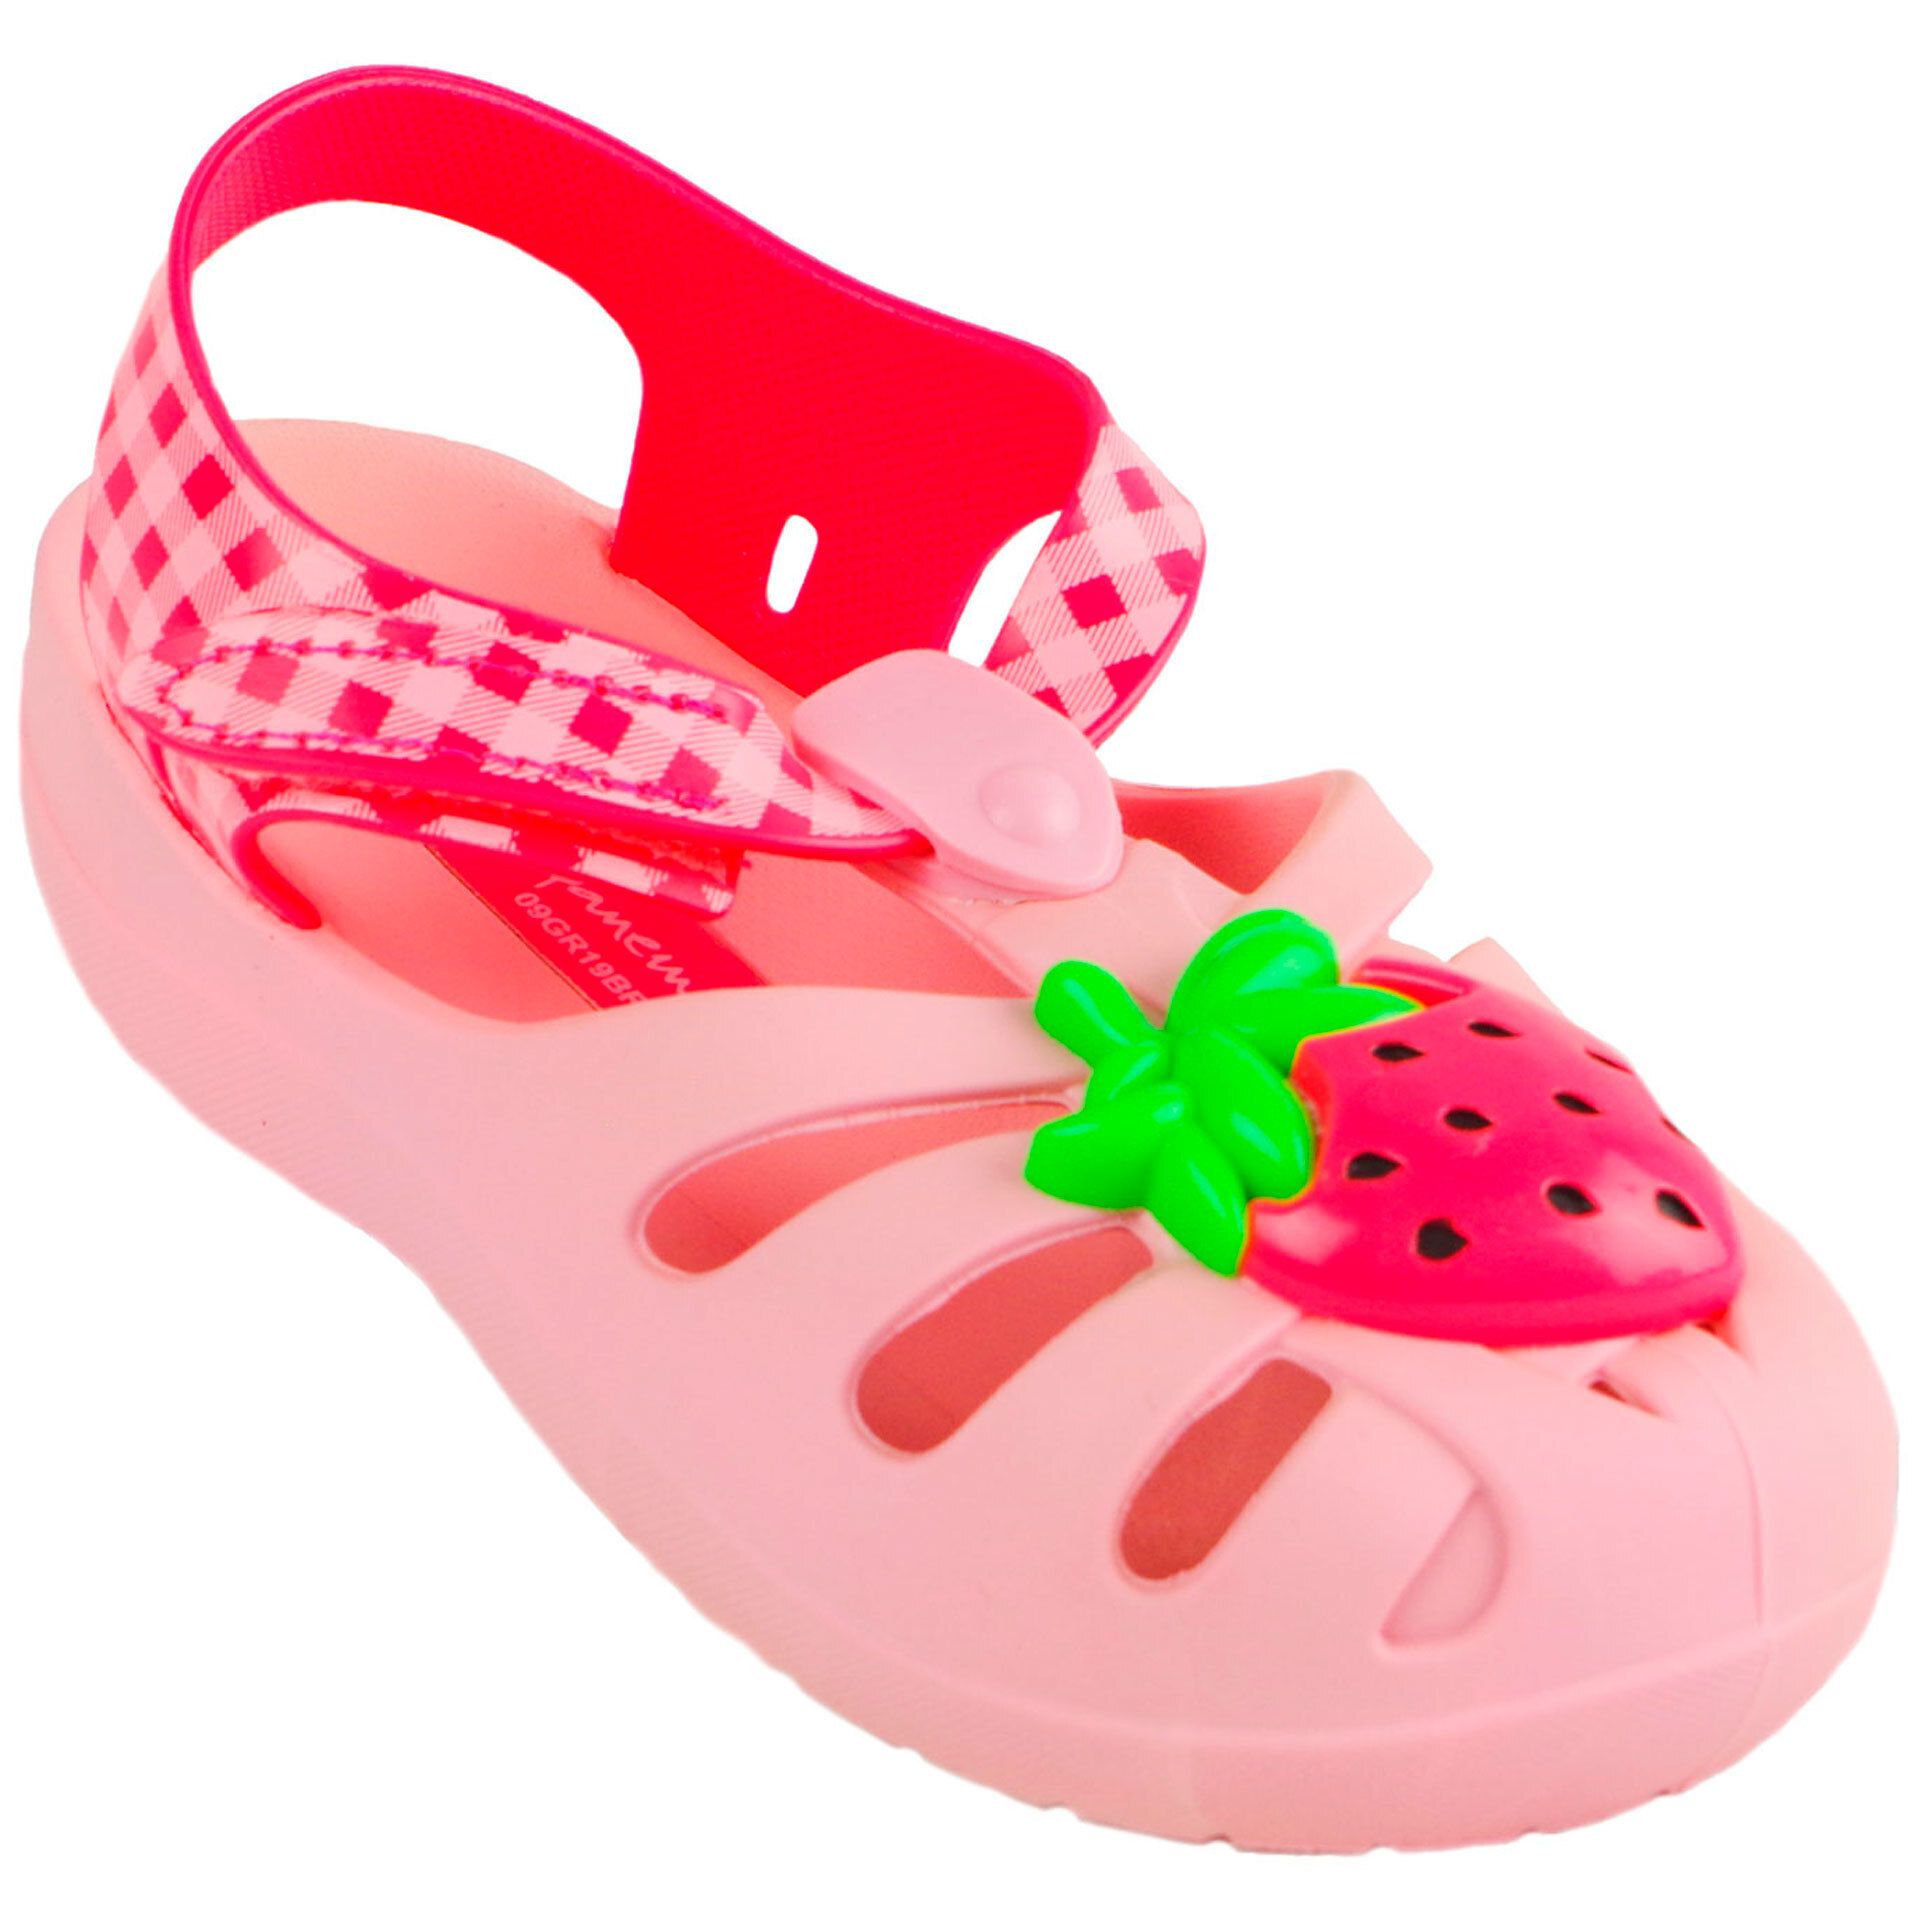 Пляжная обувь для девочки - босоножки детские (2007) 21-29 размеры, цвет Розовый – Sole Kids